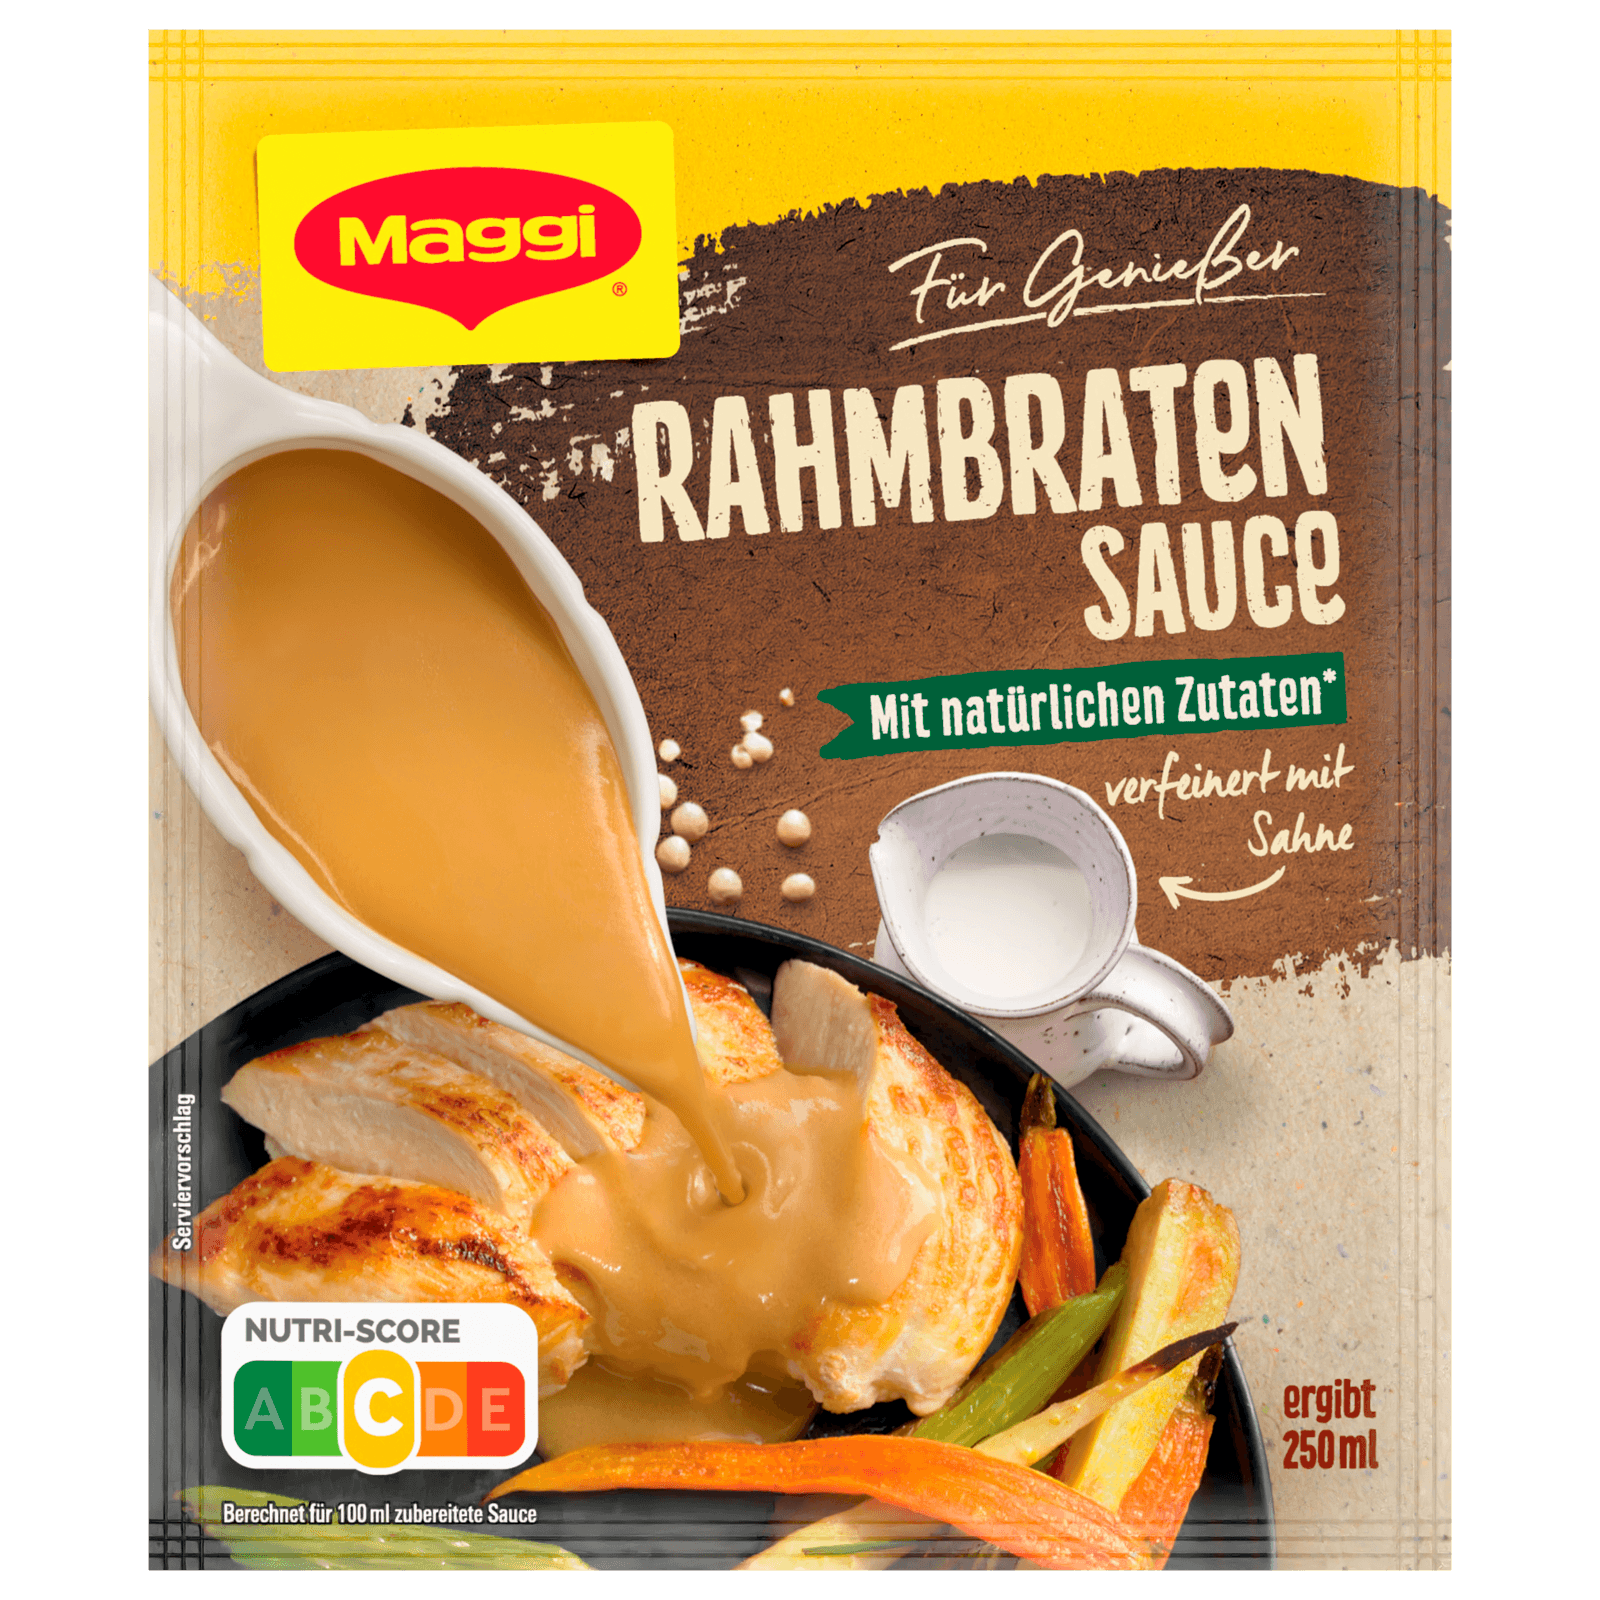 Maggi für Genießer Rahmbraten-Sauce 250ml bei REWE online bestellen!